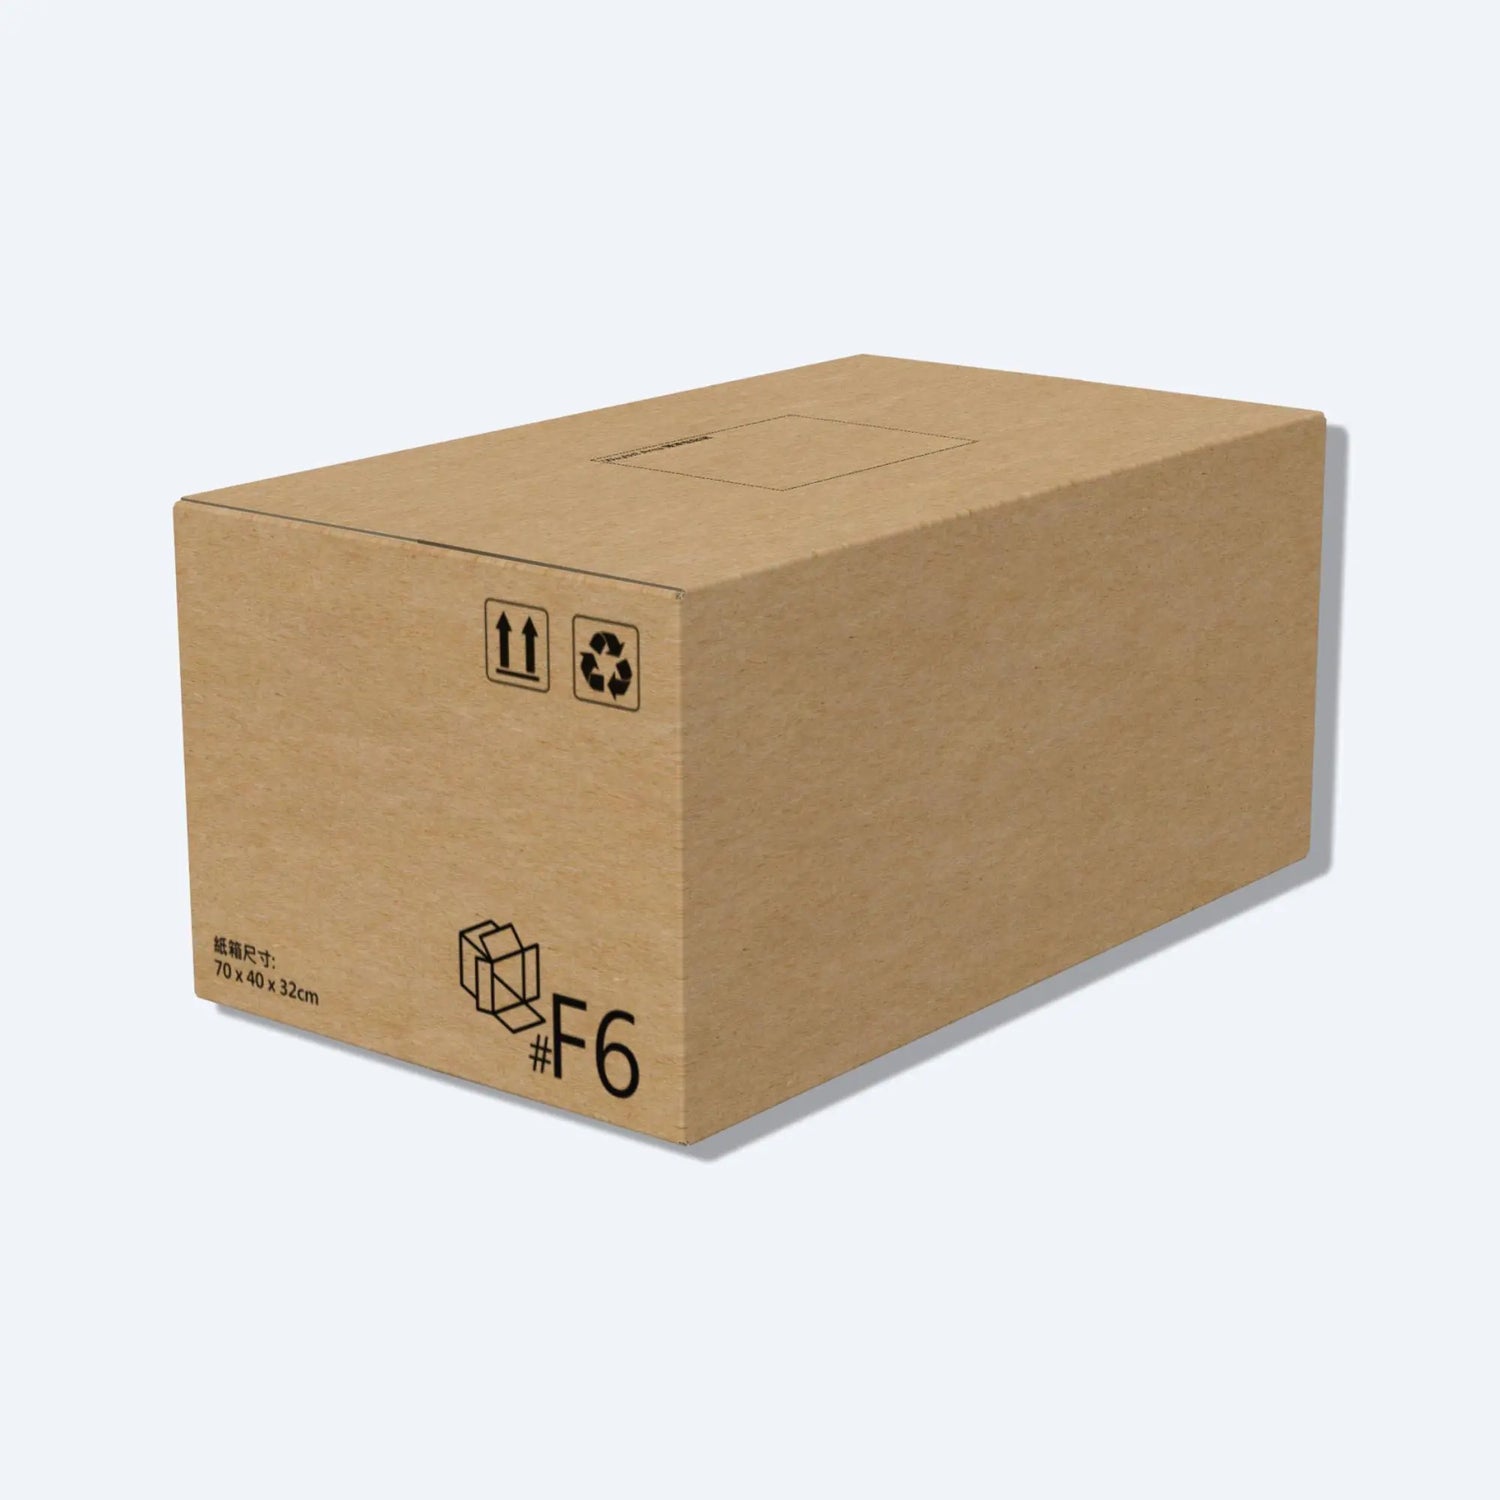 大型的順豐F6紙箱例面圖，印有70x40x32cm的尺寸。